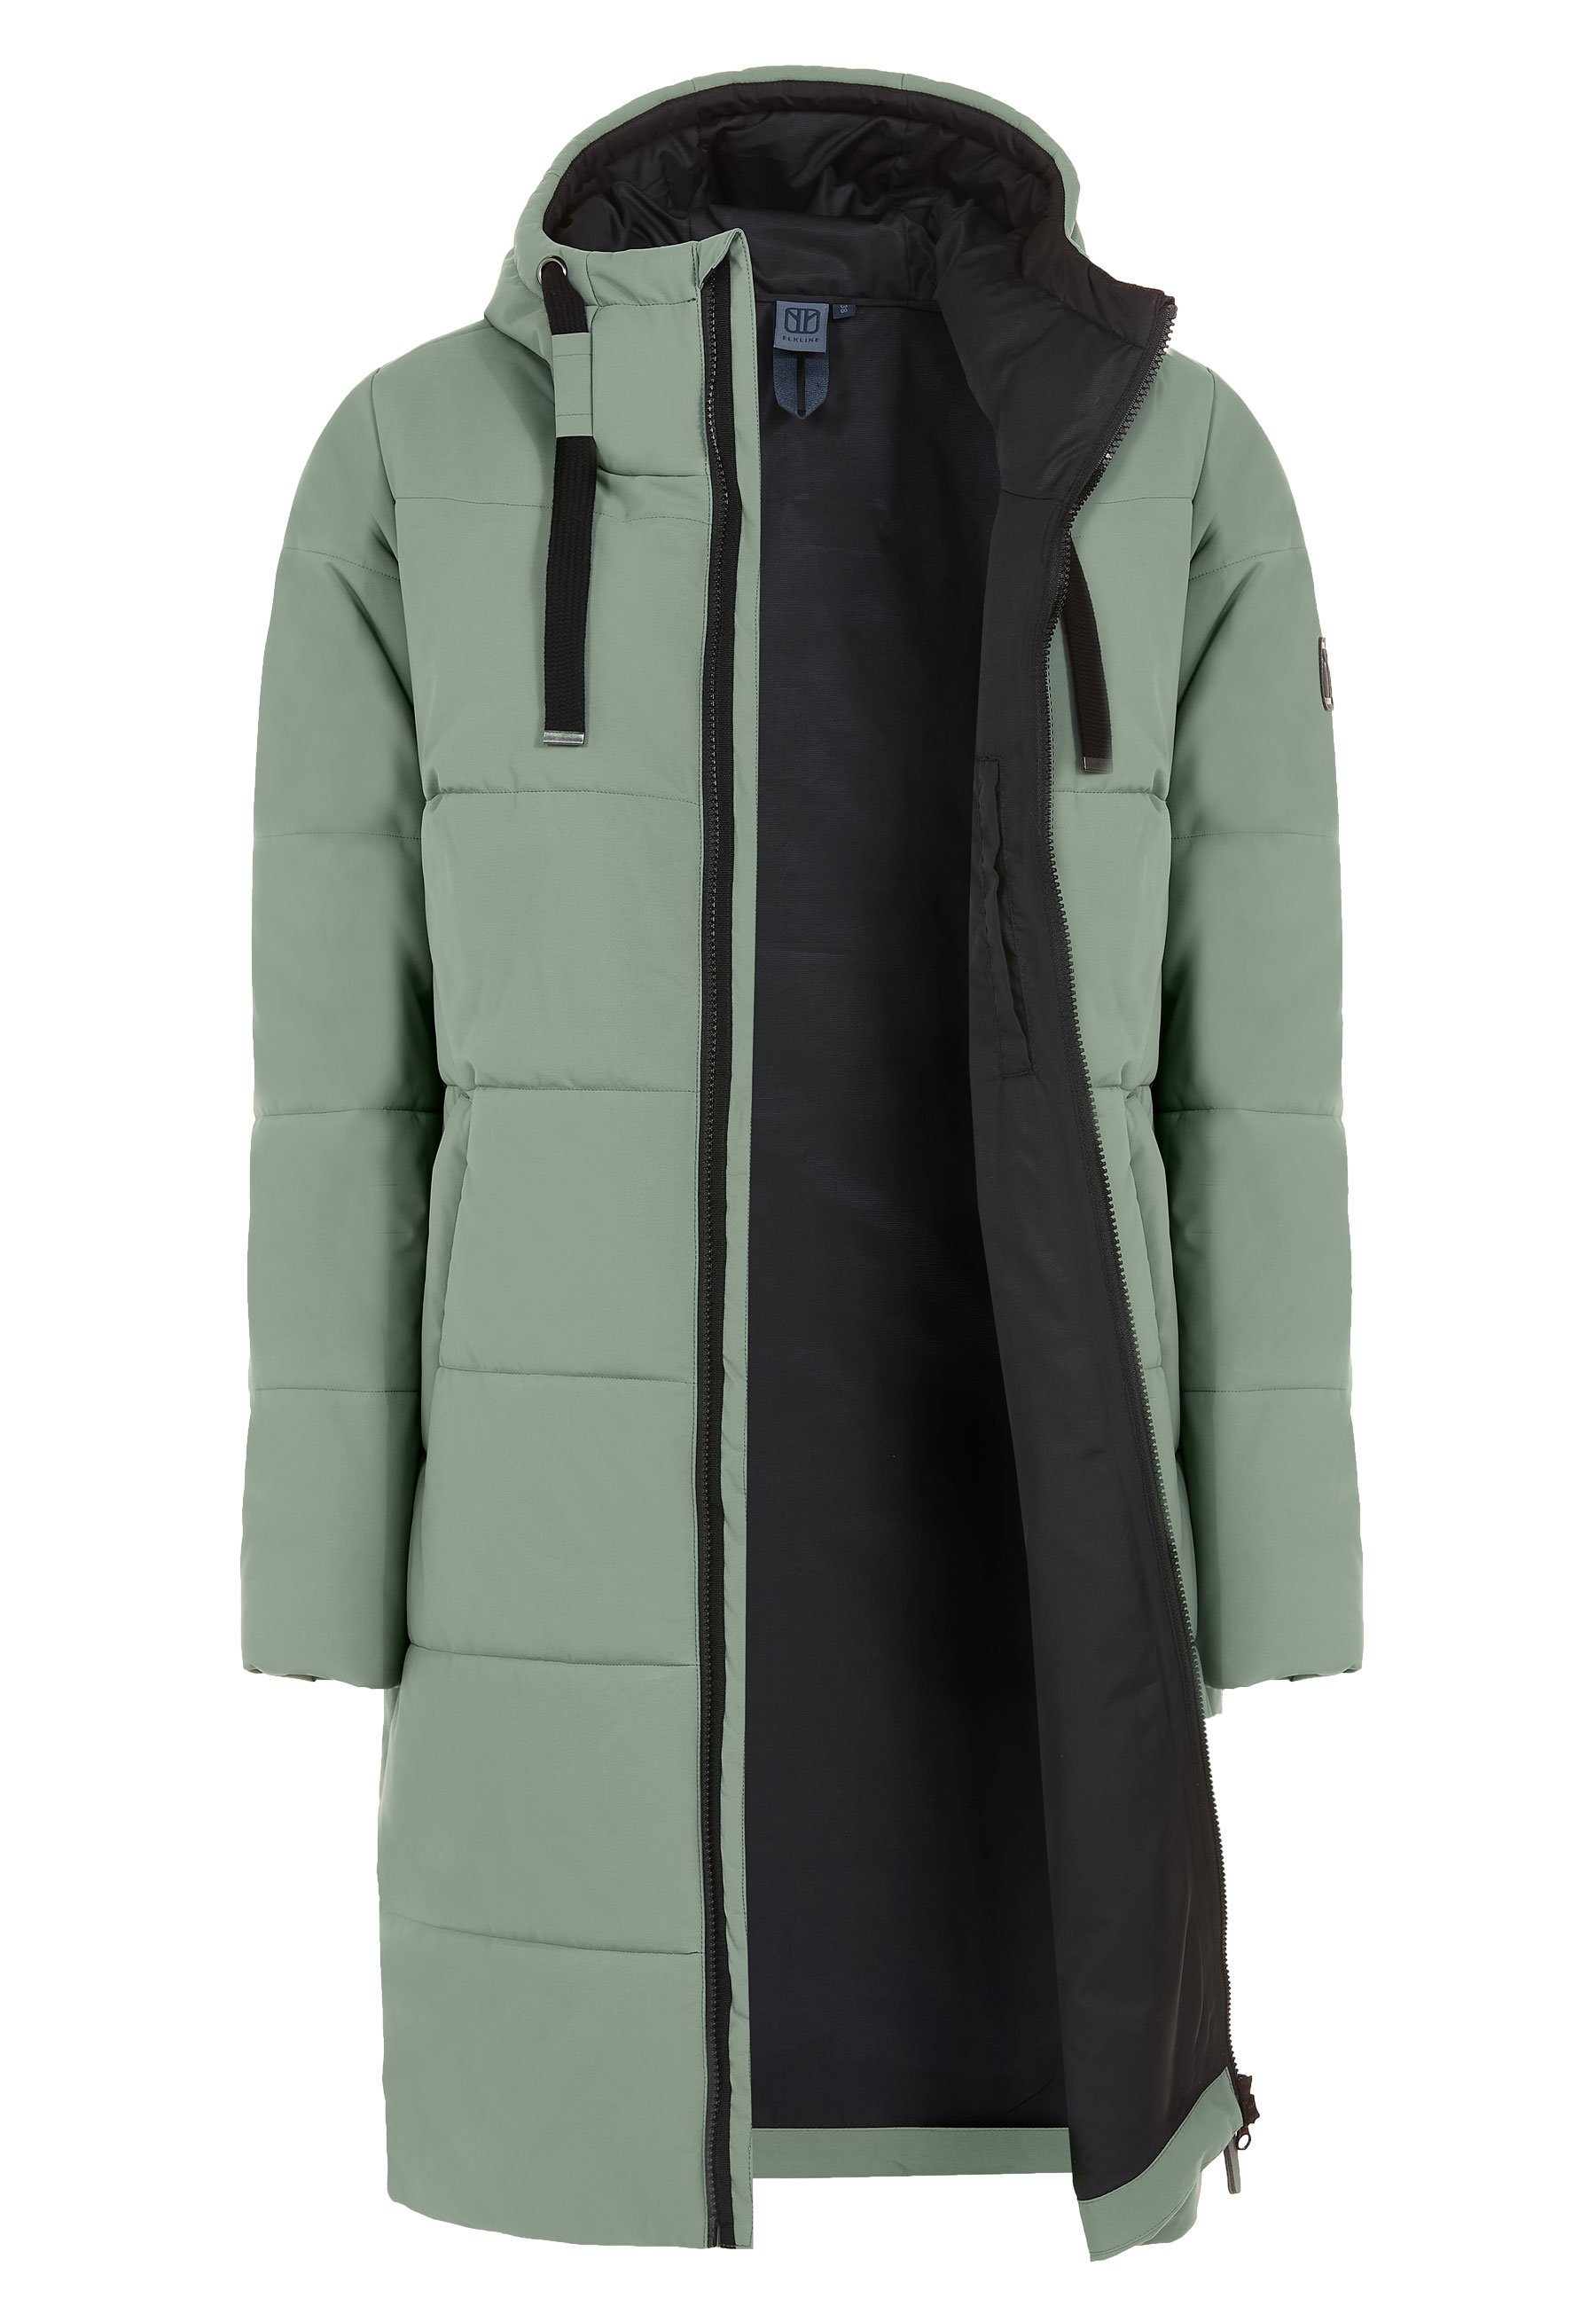 Elkline Winterjacke Comfort leichter olive langer Mantel, soft 2-Wege-Reißverschluss